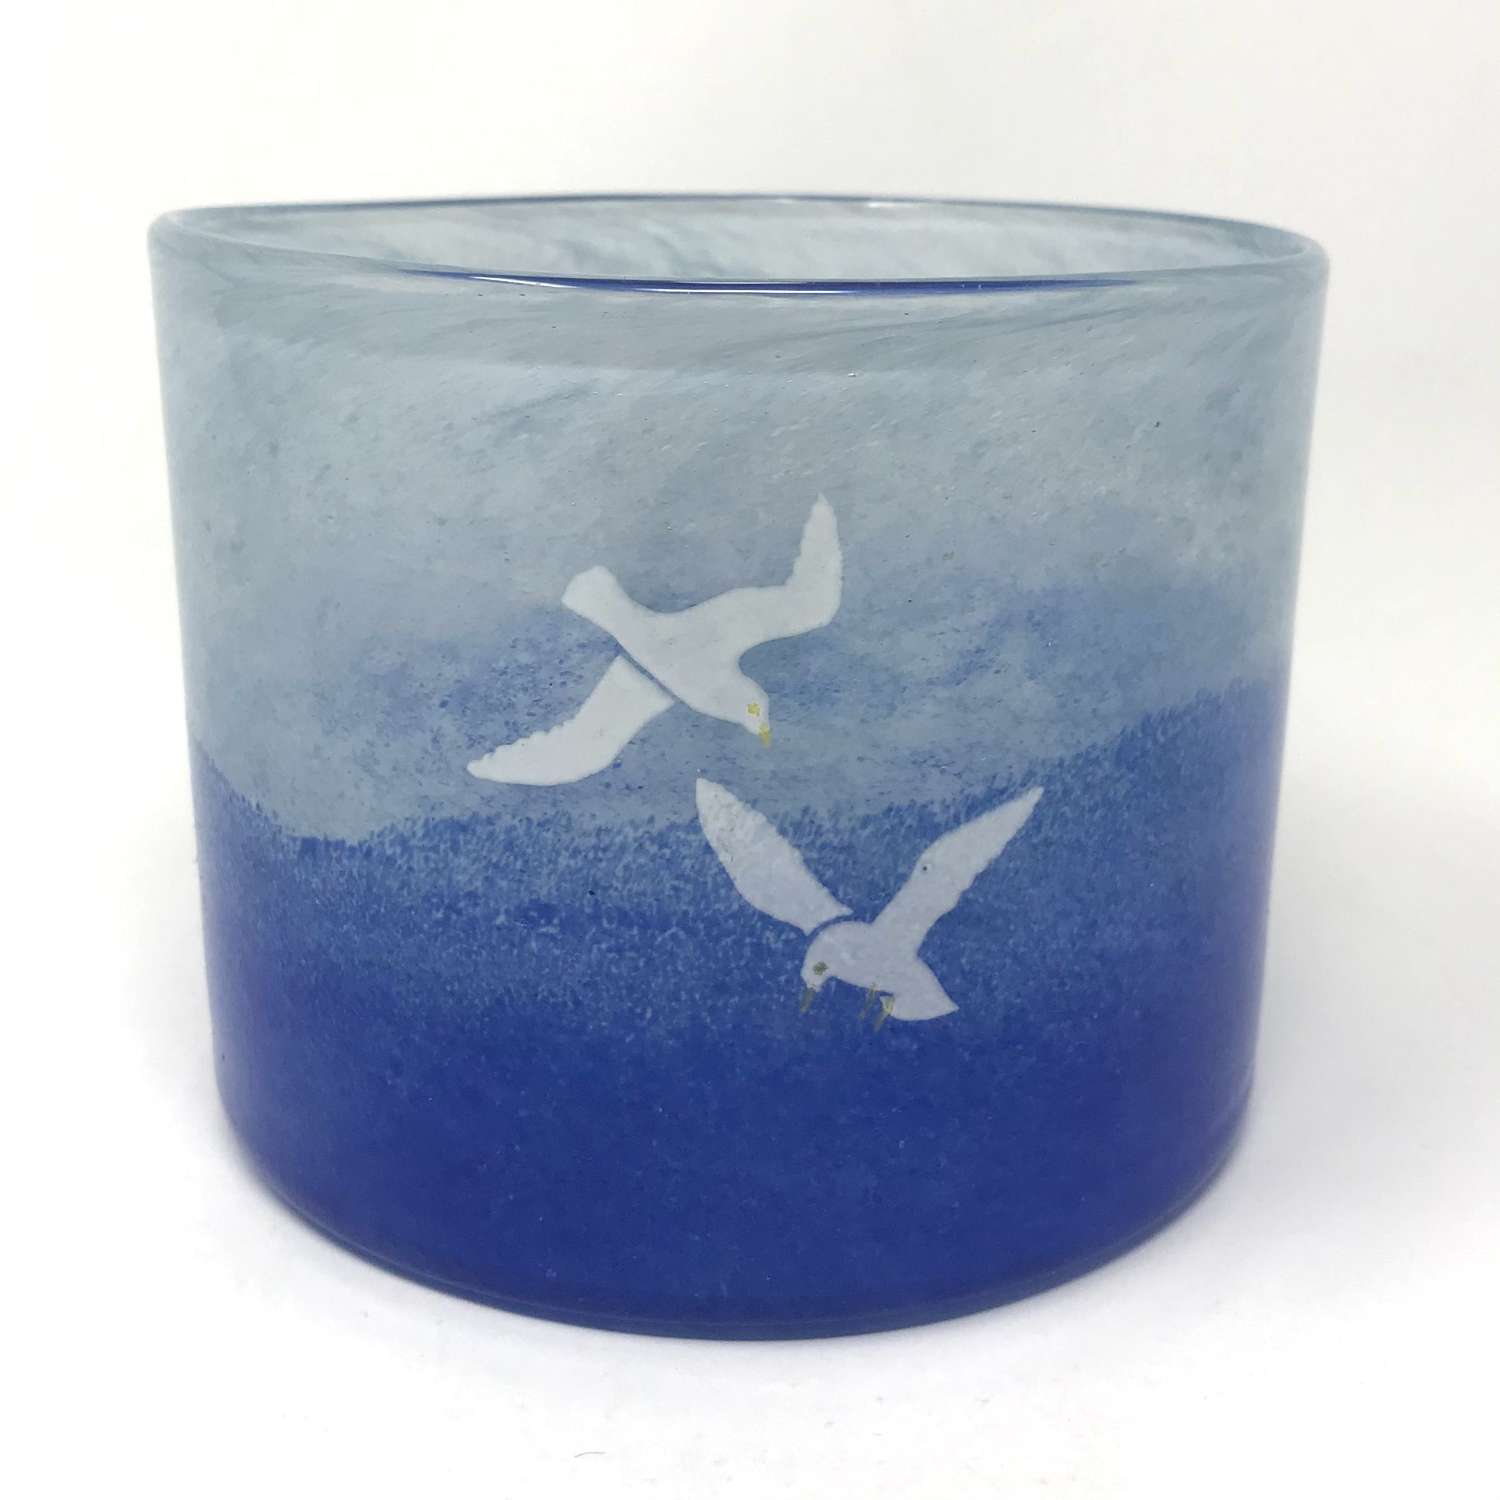 Kjell Engman Blue glass vase with seagulls Boda Sweden 1980s Medium